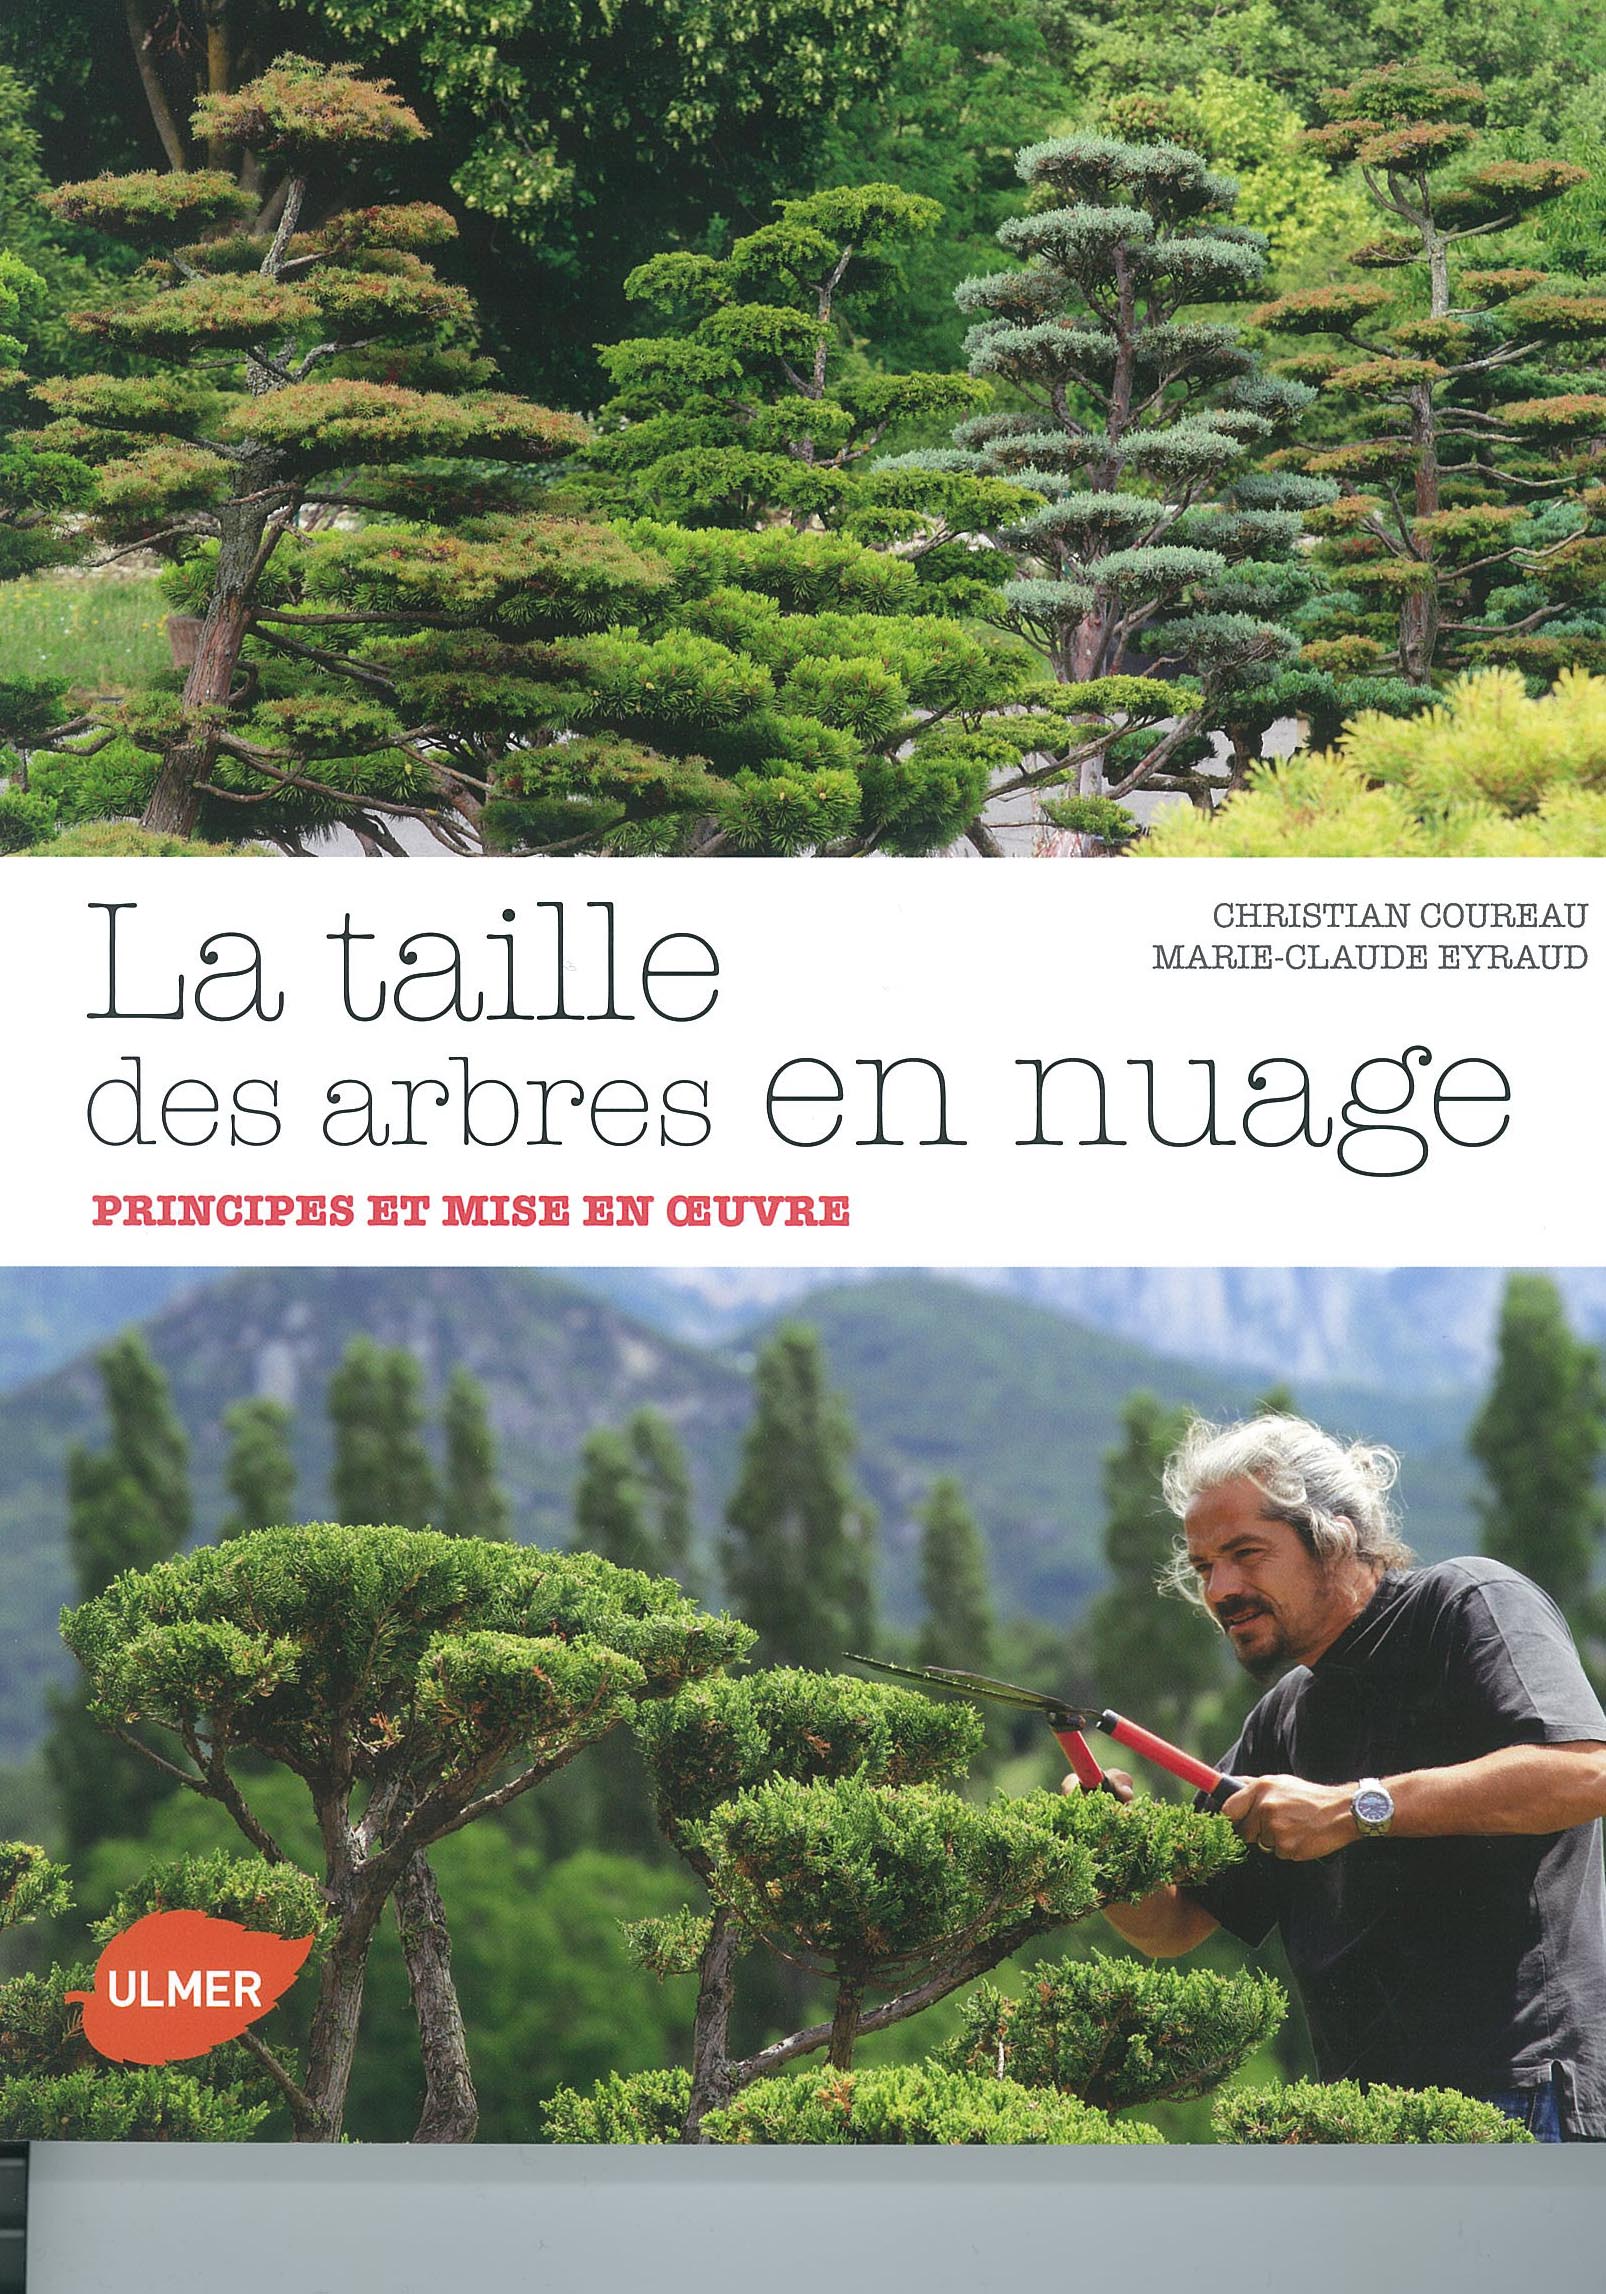 La taille des arbres en nuages de Christian Coureau et Marie-Claude Eyraud Editions Ulmer